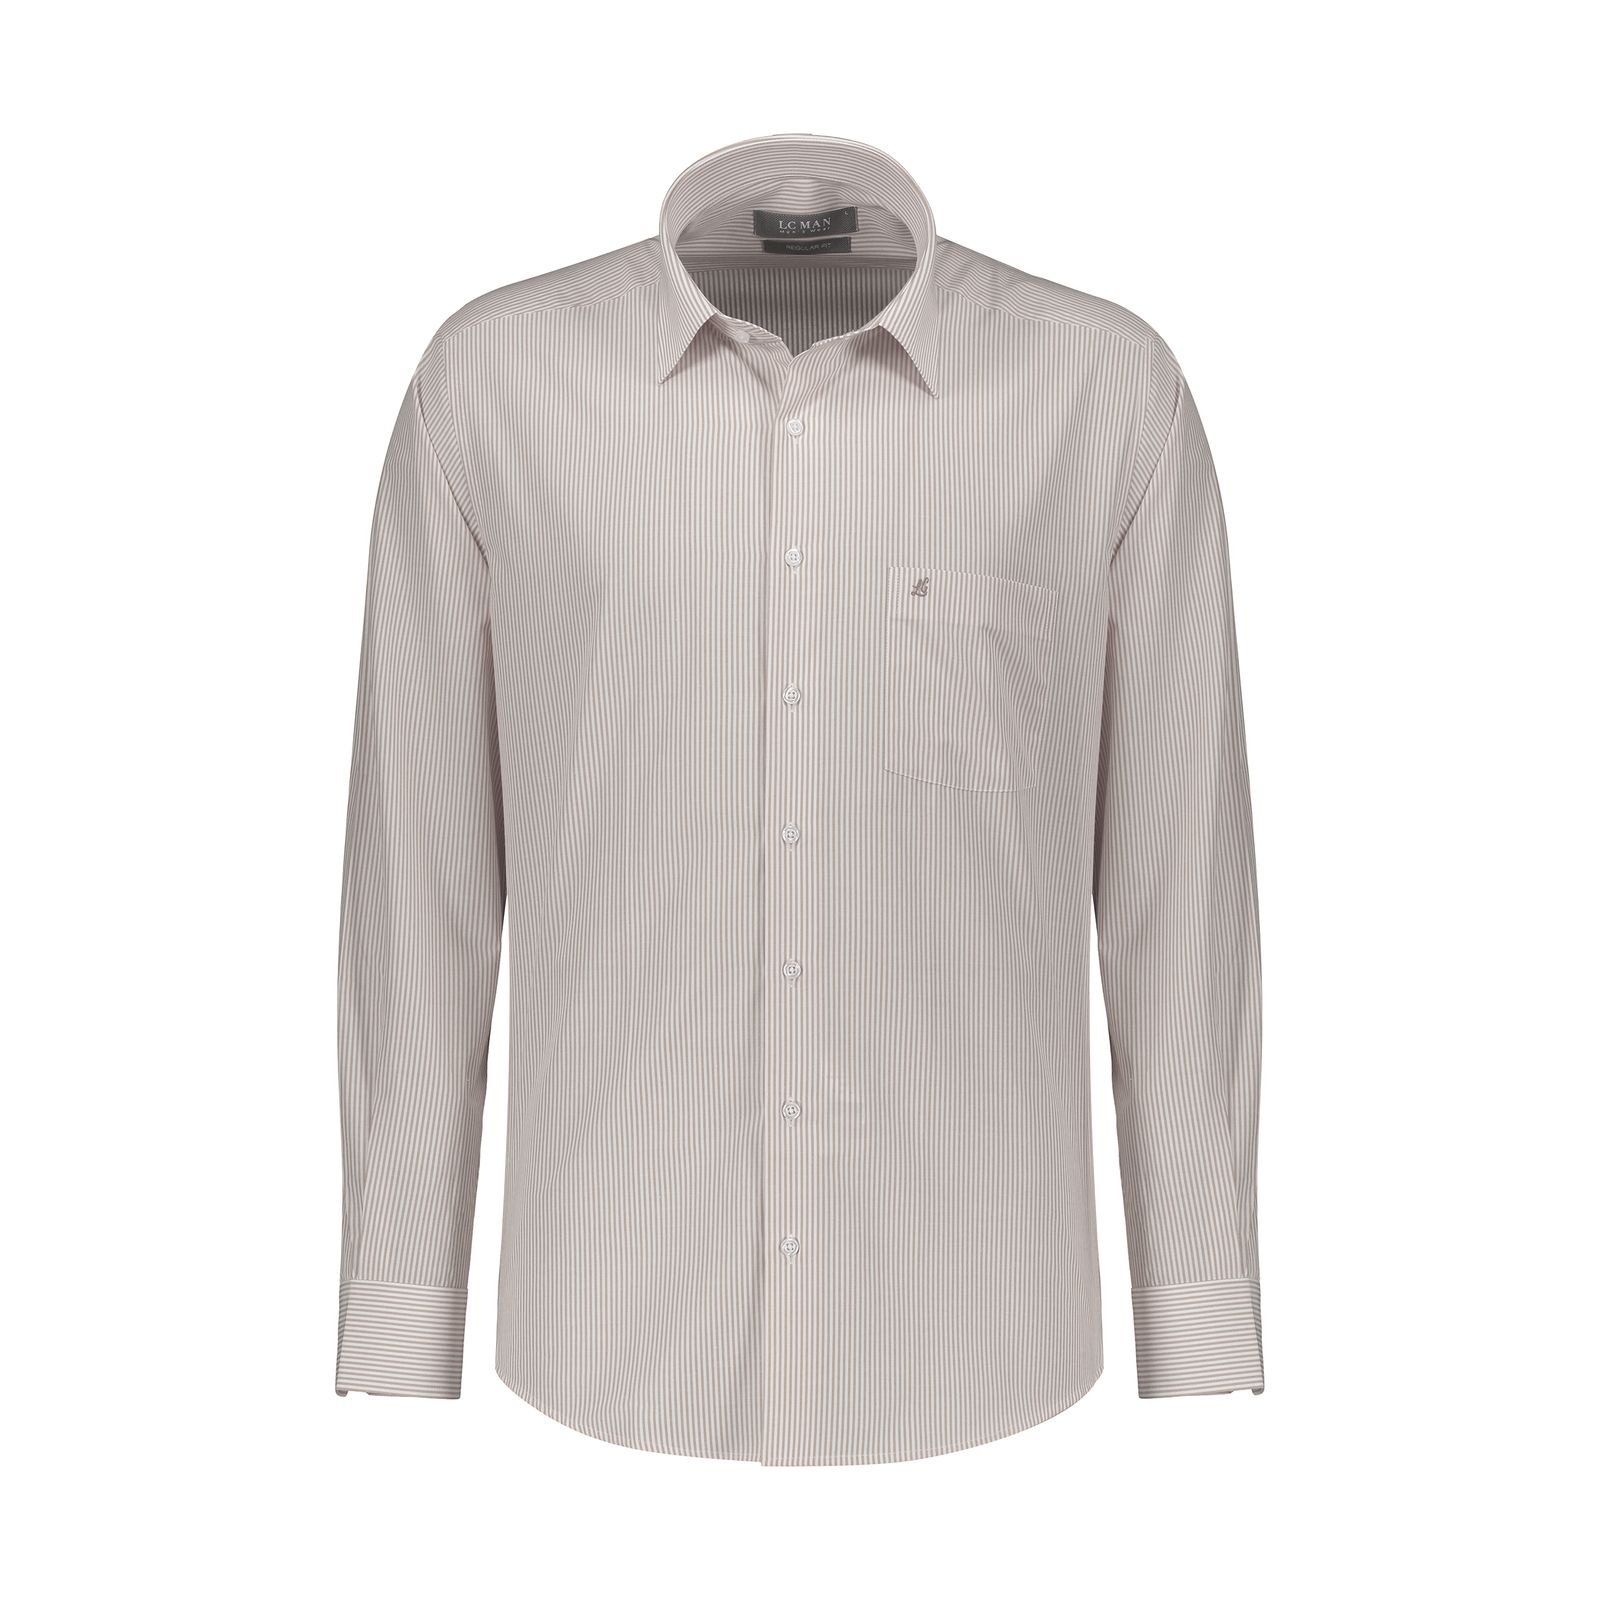 پیراهن آستین بلند مردانه ال سی من مدل 02181290-gray 402 -  - 1